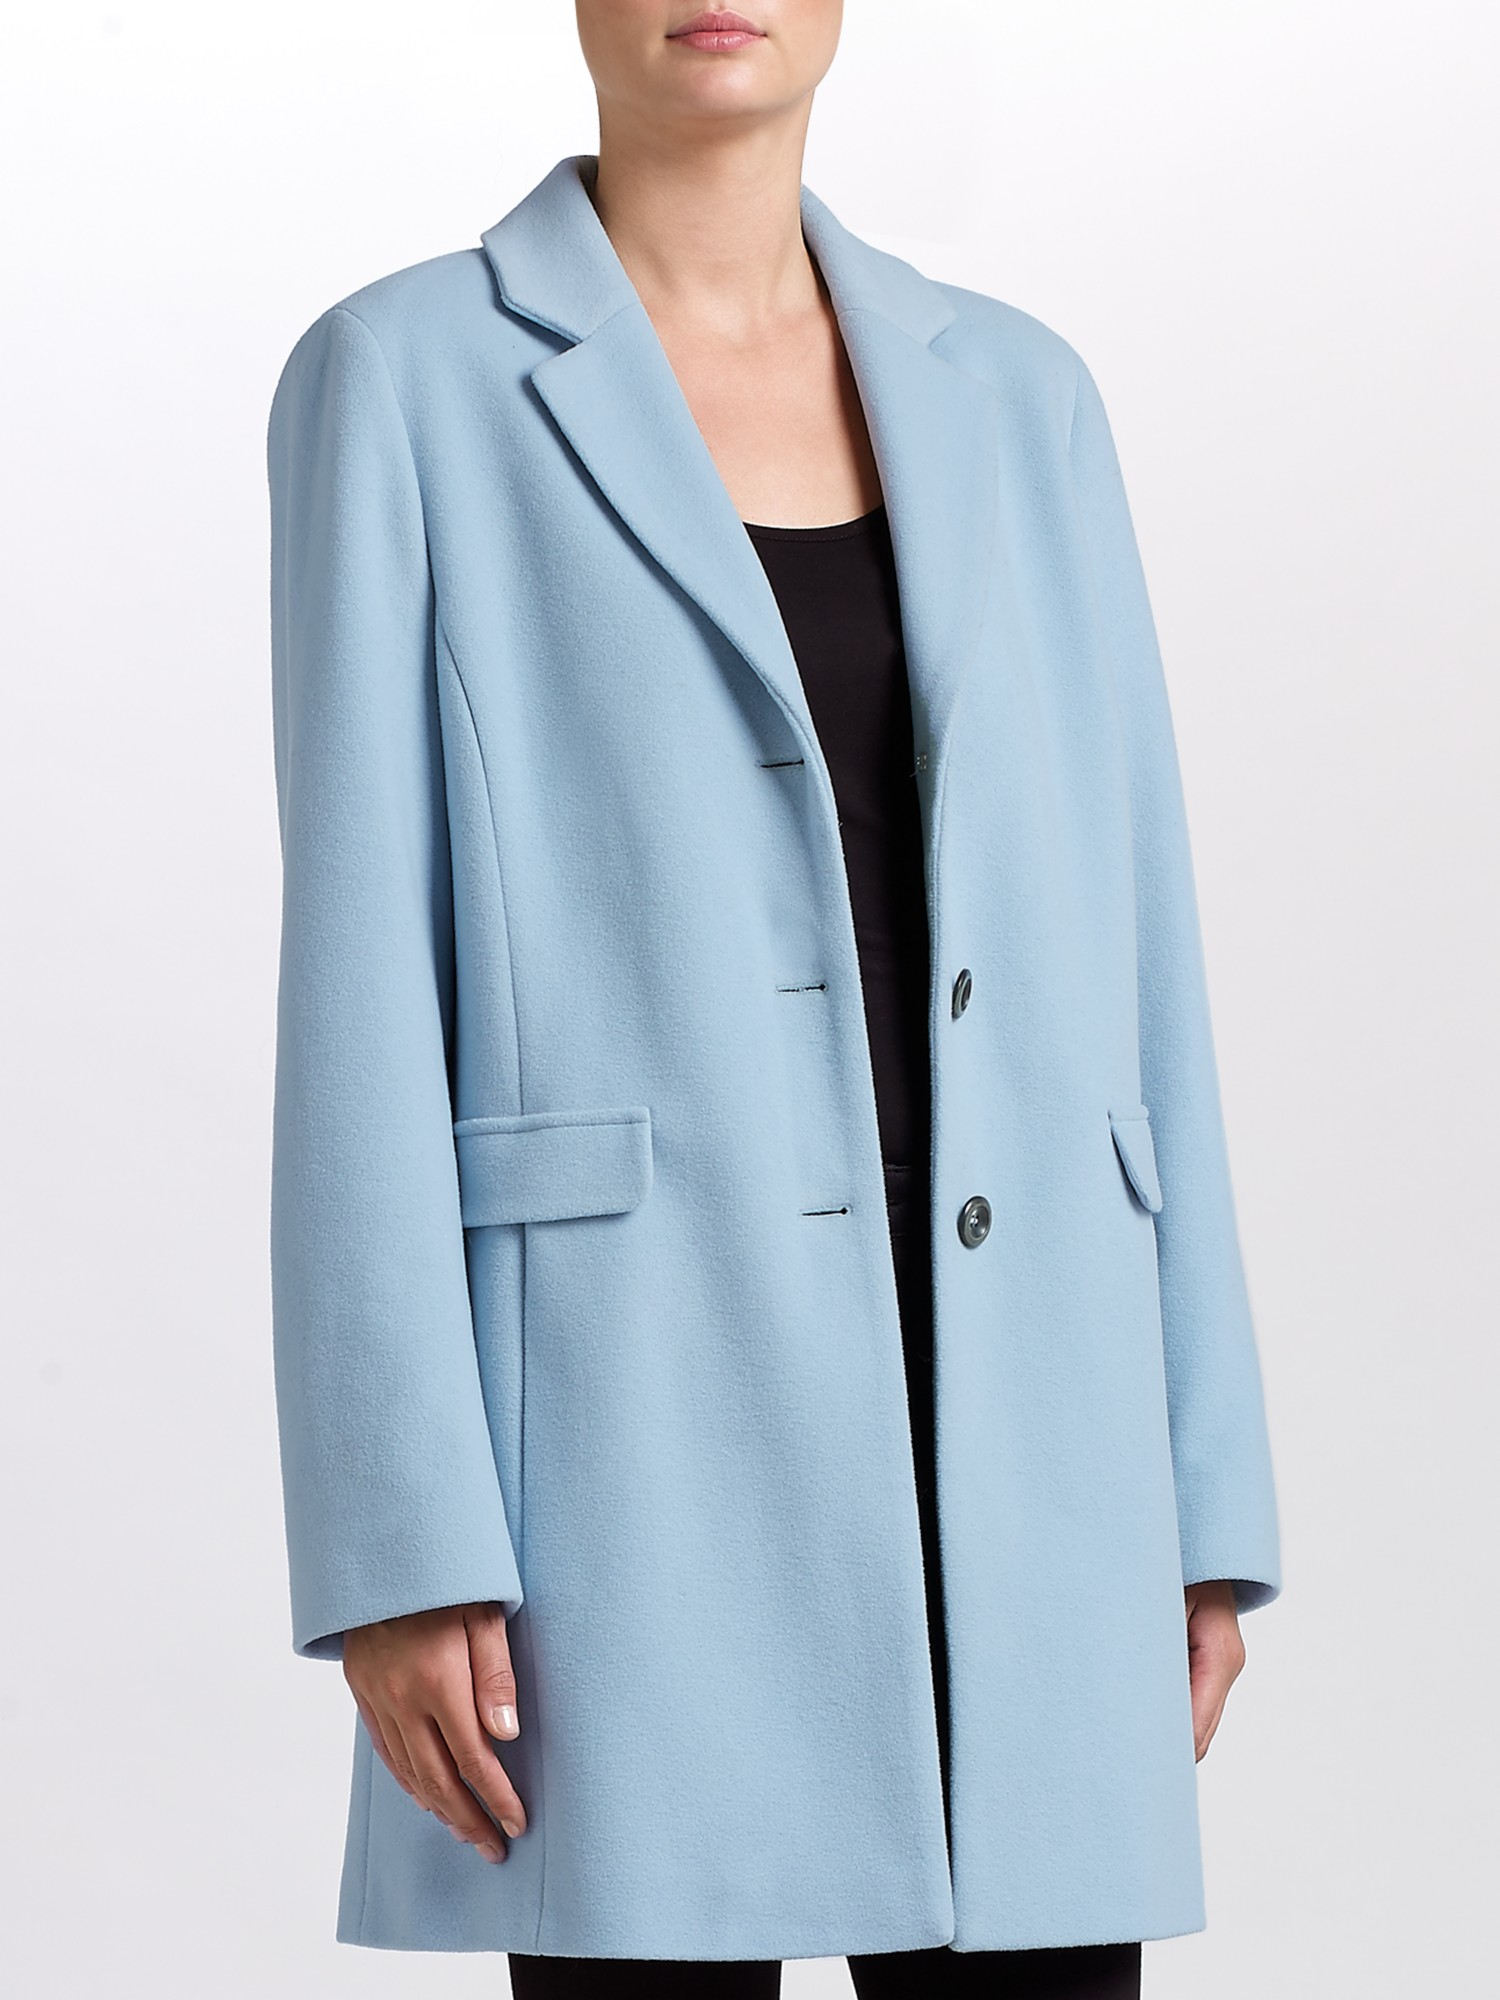 Gerry Weber Wool-blend Coat in Blue - Lyst